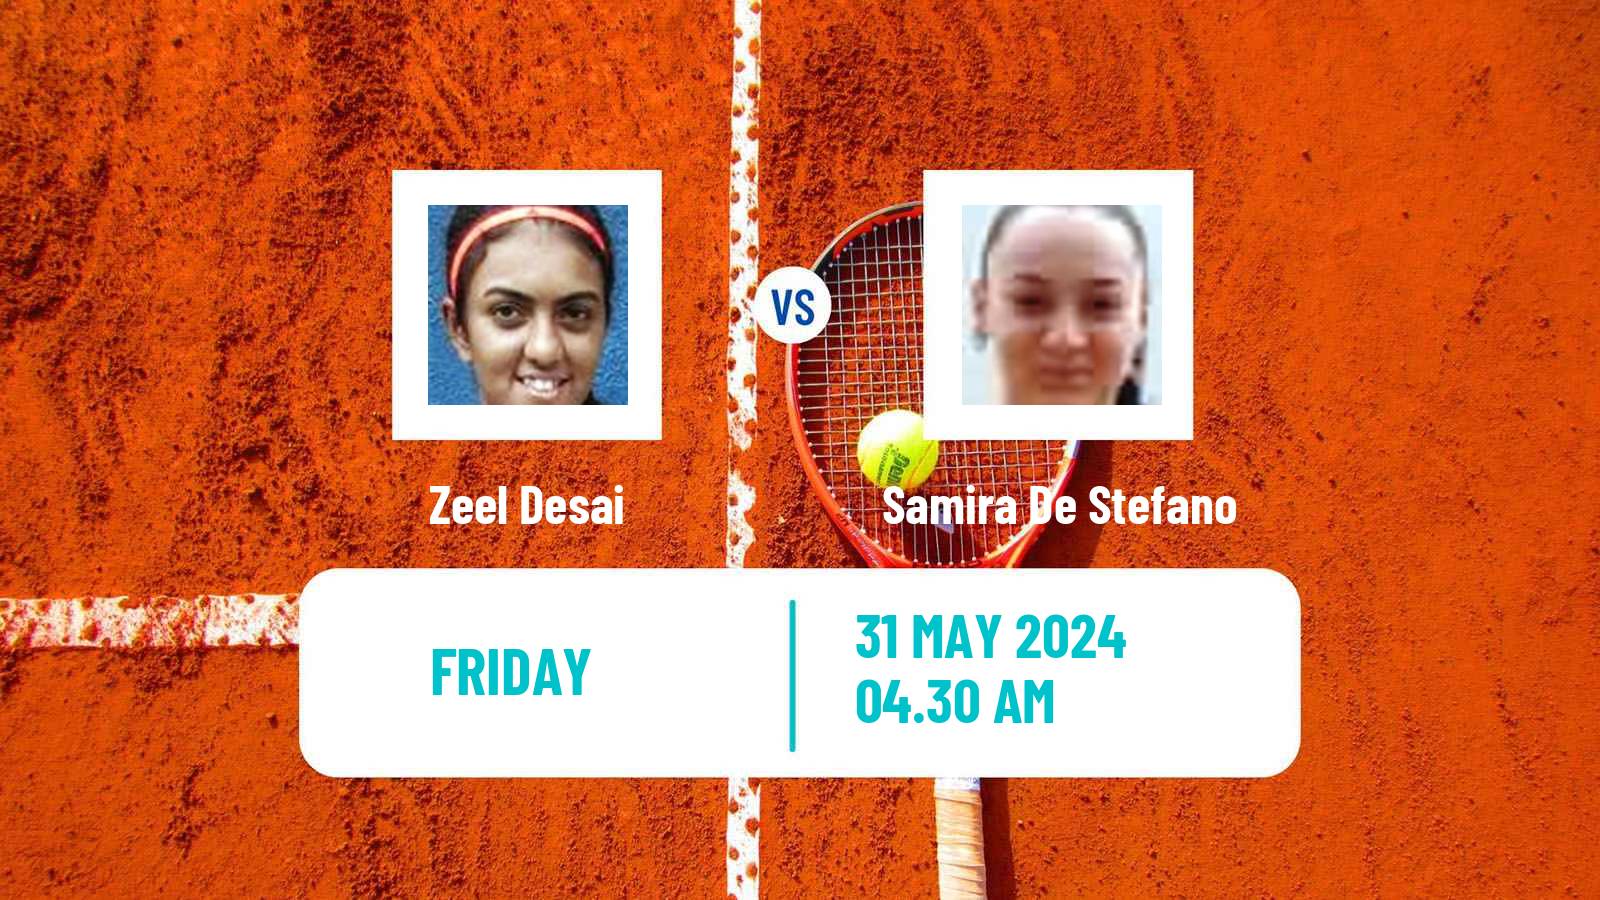 Tennis ITF W15 Monastir 20 Women Zeel Desai - Samira De Stefano